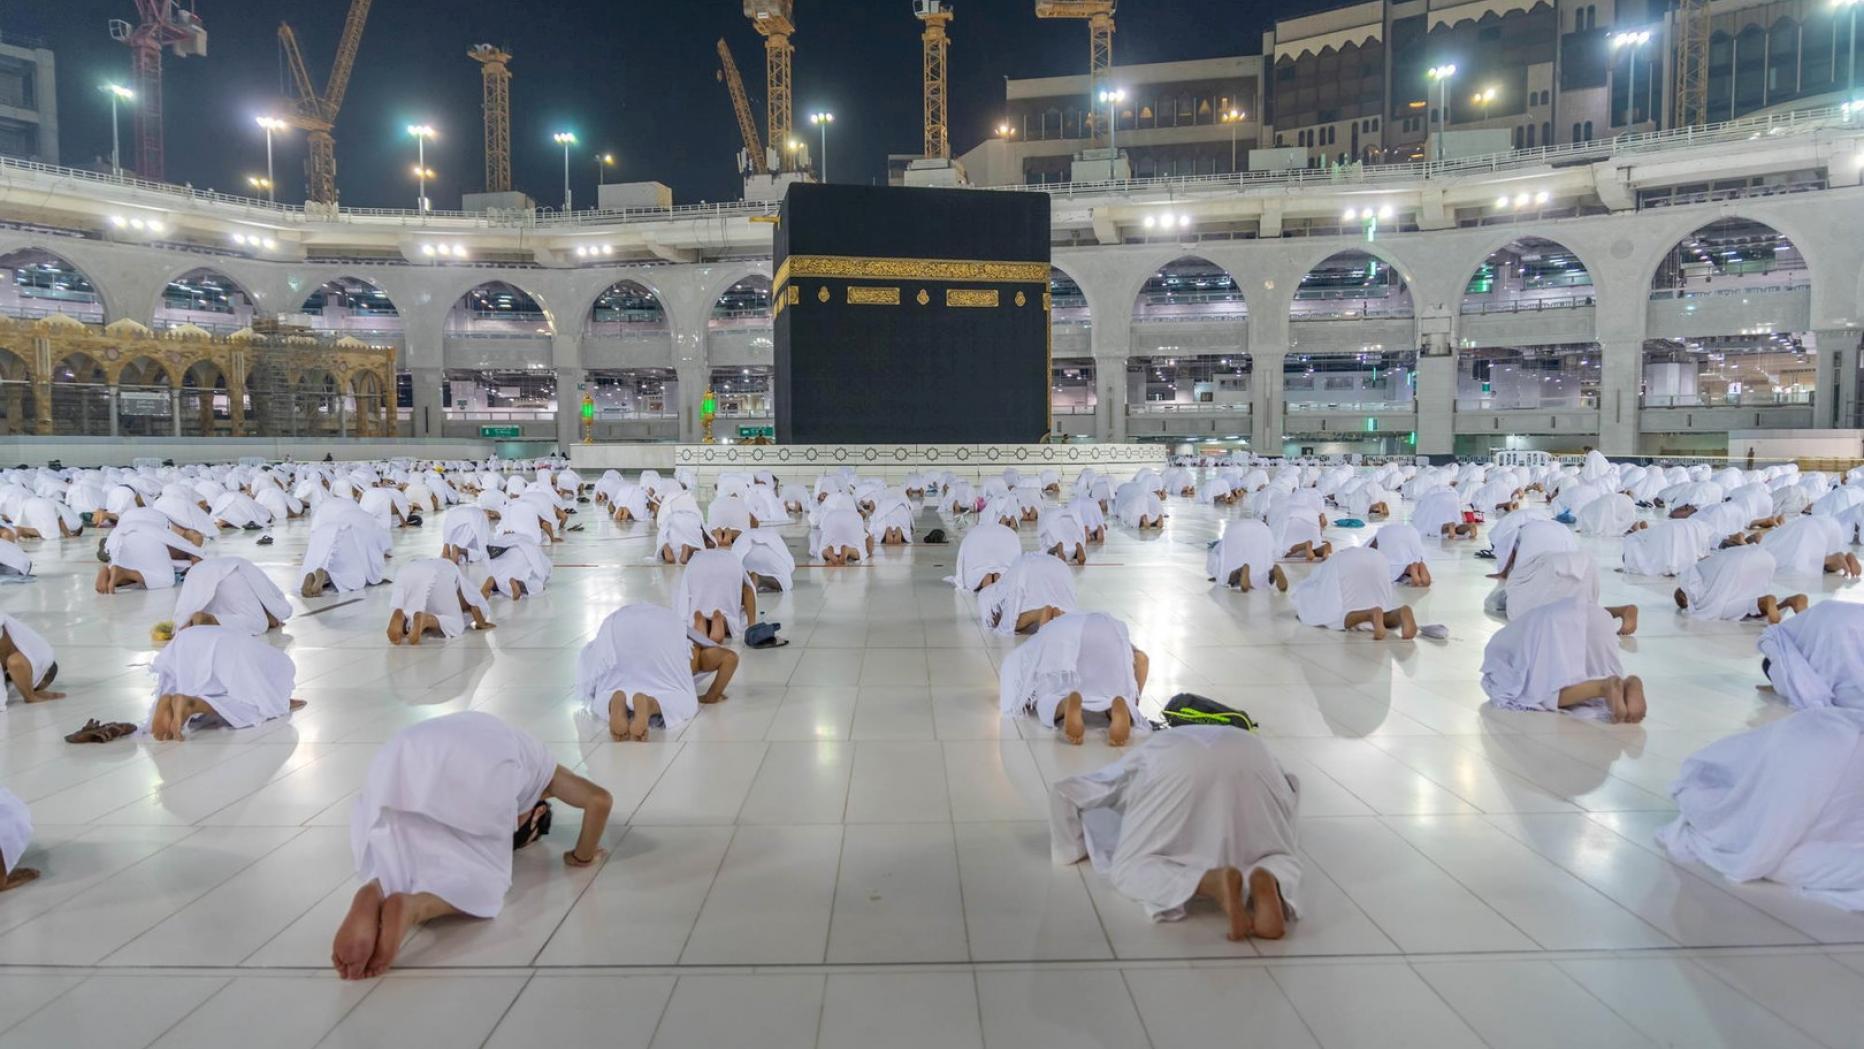 Muslimani širom svijeta ponovo suočeni s brojnim restrikcijama tokom ramazana